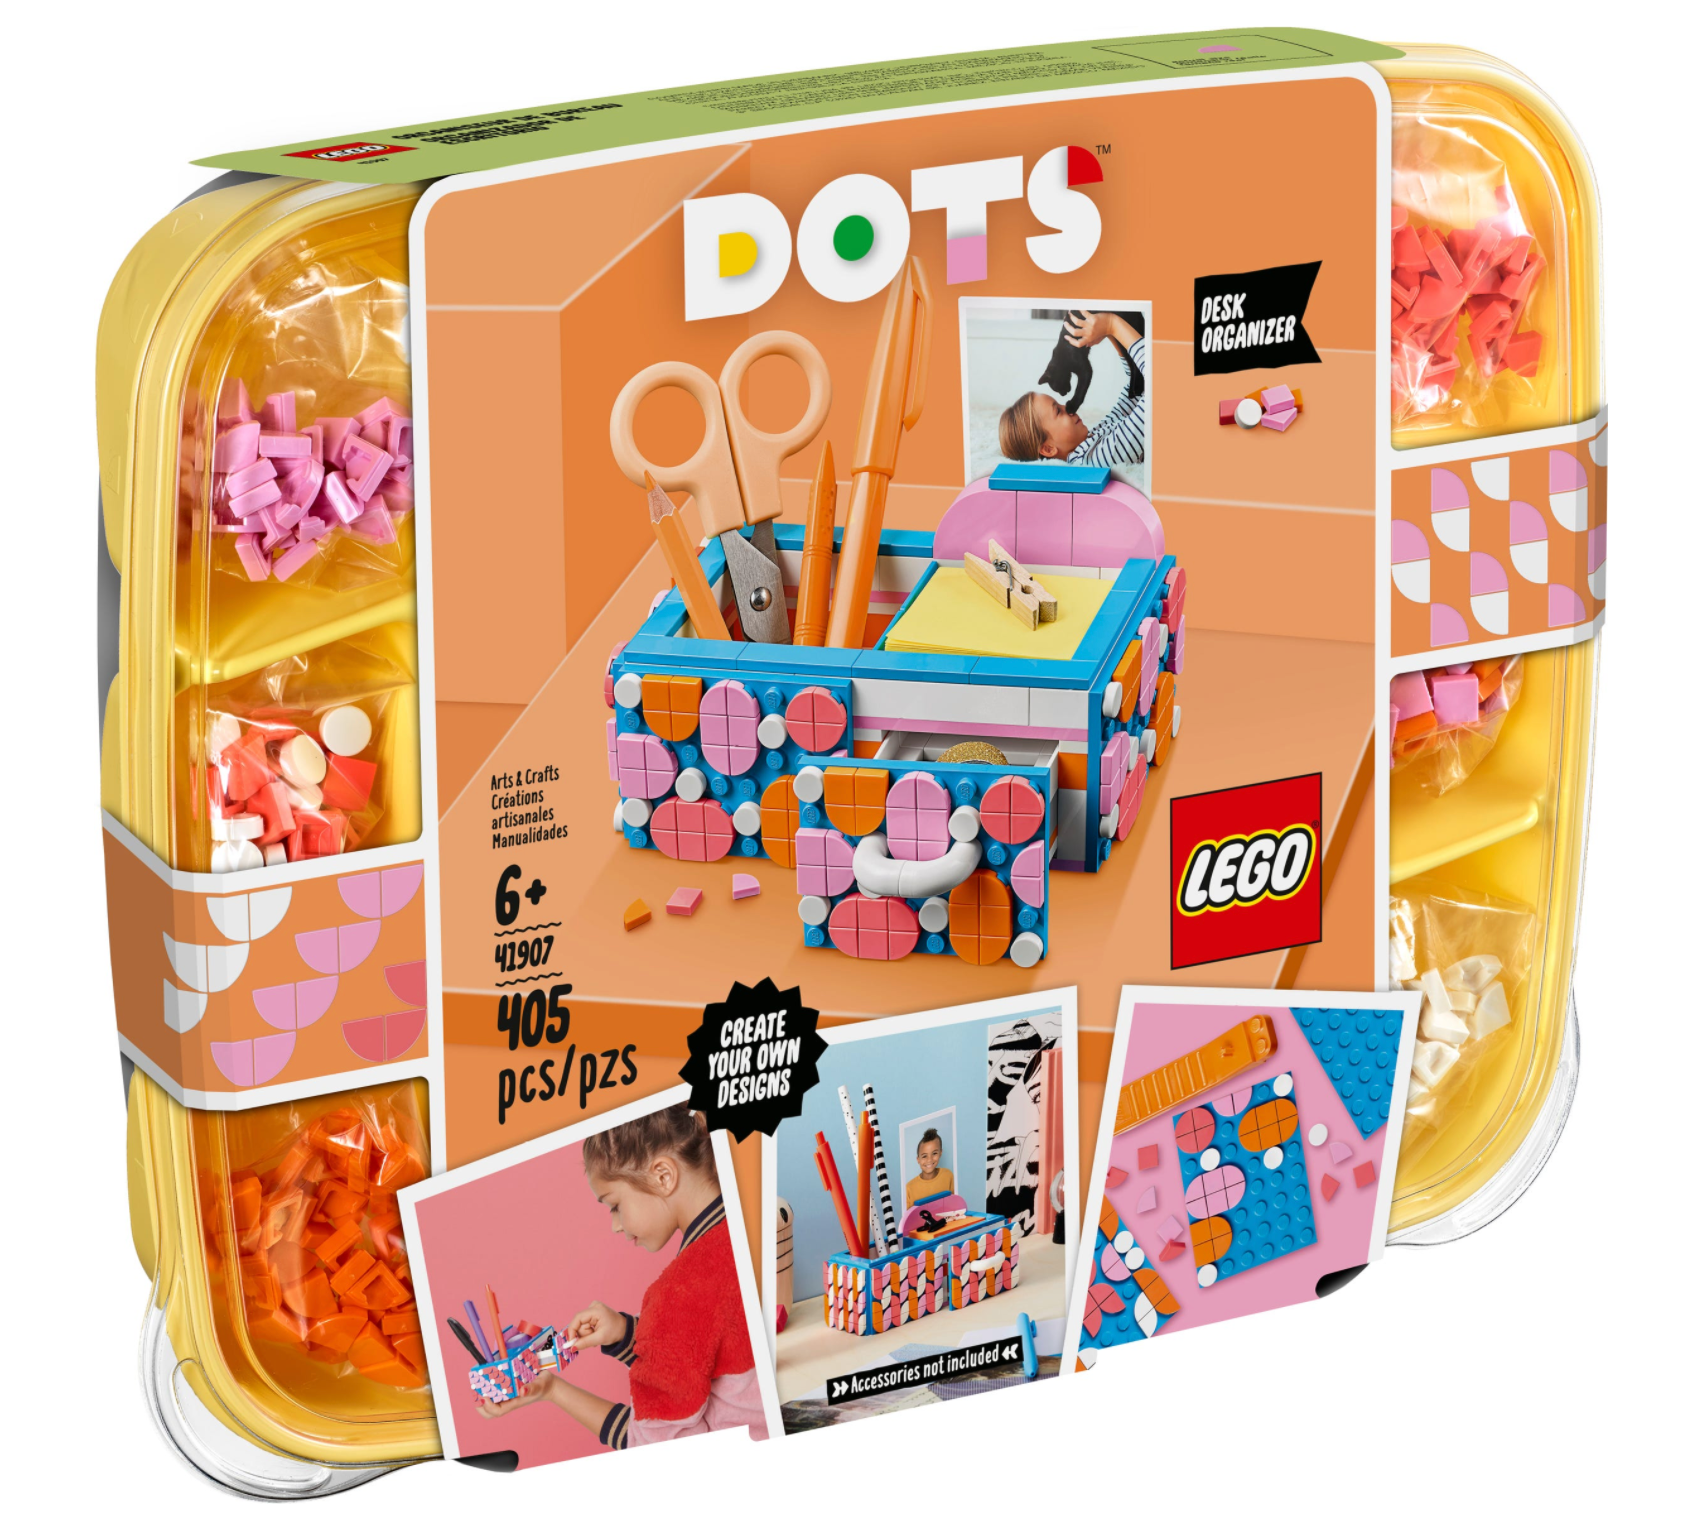 LEGO: DOTS - Desk Organizer